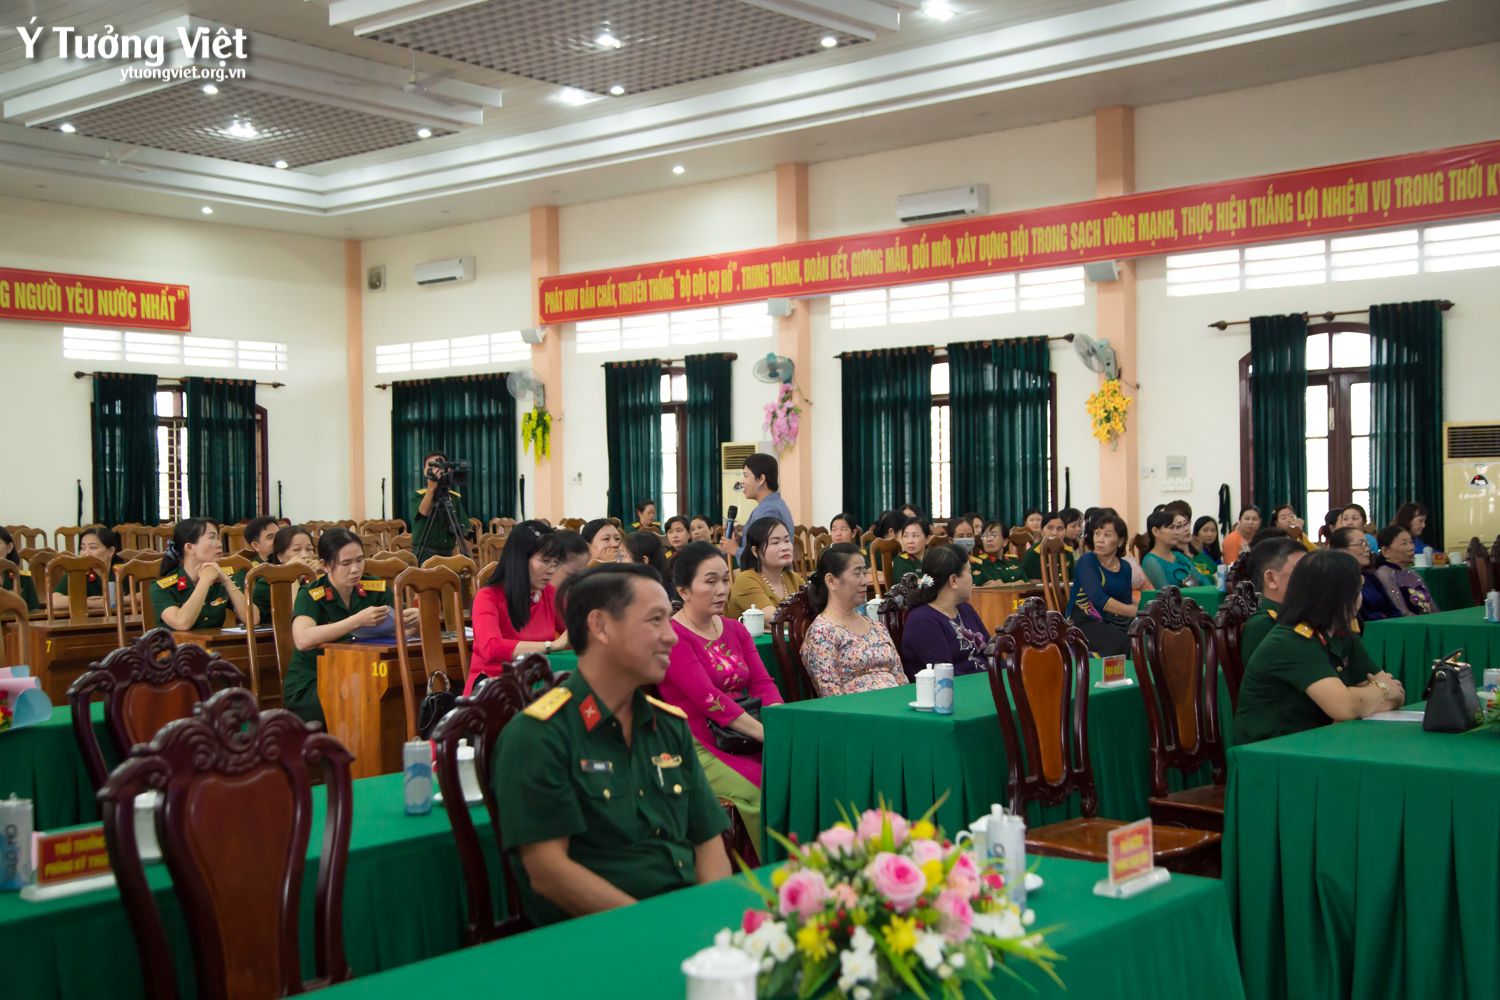 Mừng Kỉ Niệm 92 Năm Thành Lập Hội Liên Hiệp Phụ Nữ Việt Nam, đồng Hành Cùng Ban Chỉ Huy Quân Sự Tỉnh Vĩnh Long Trong Chuyên đề Bí Kíp Xây Dựng Gia đình Hạnh Phúc 05